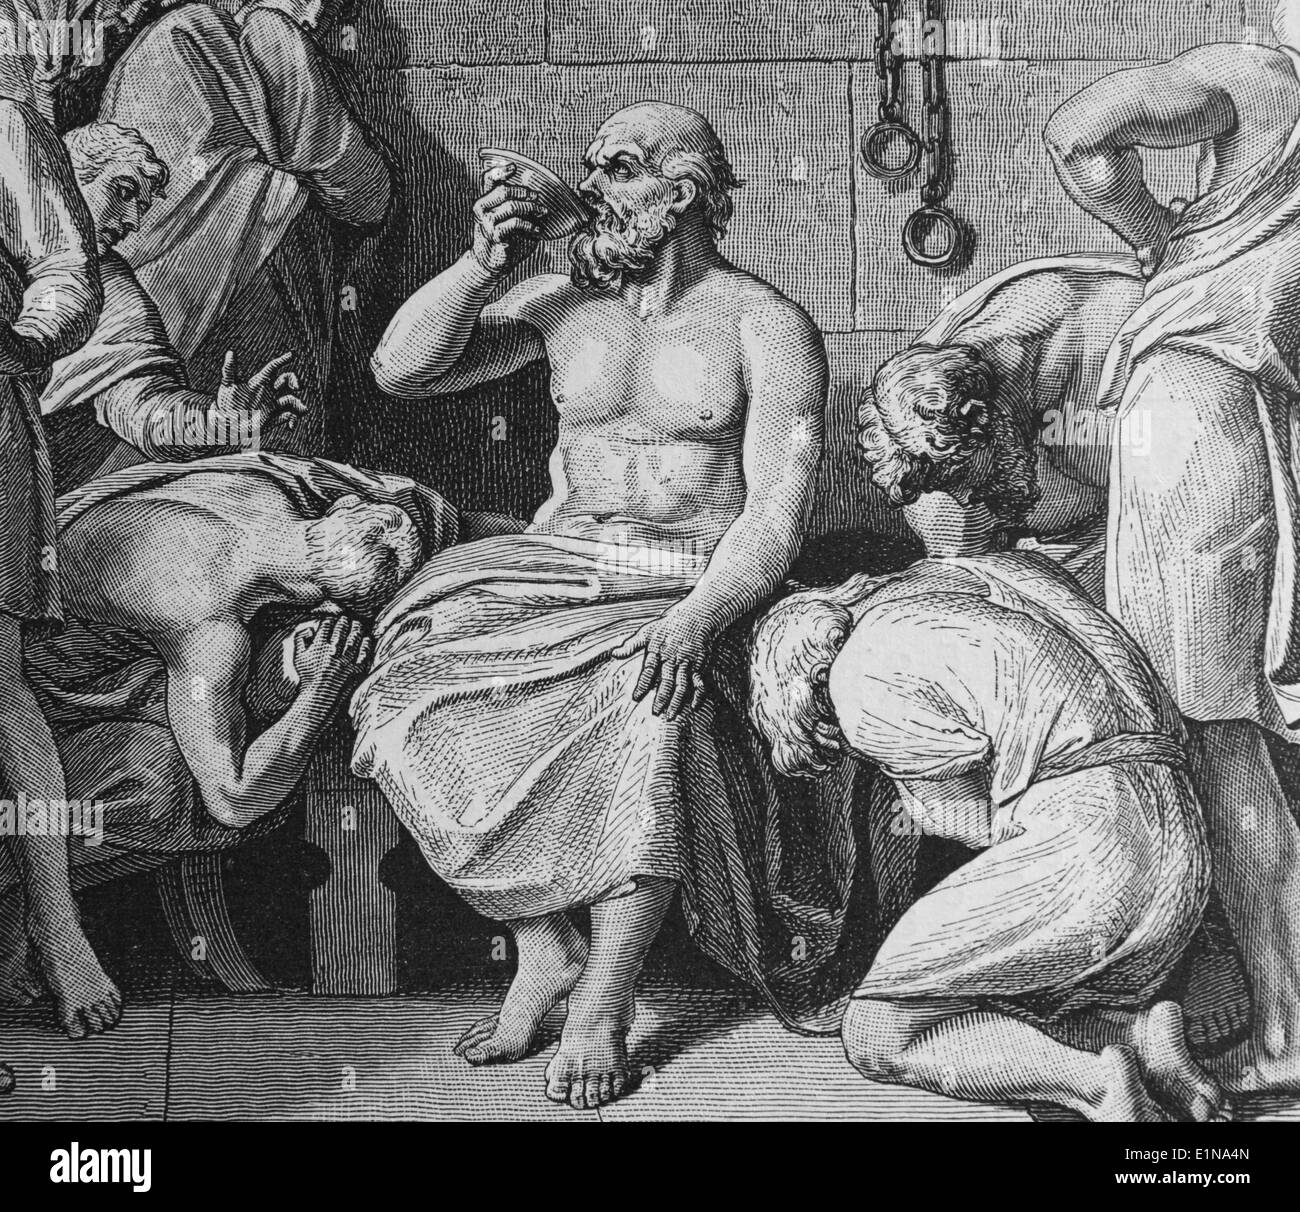 La mort de Socrate (469 BC-399 BC) en buvant du poison. Philosophe Grec classique. Gravure, 1880. La Grèce et Rome. Banque D'Images